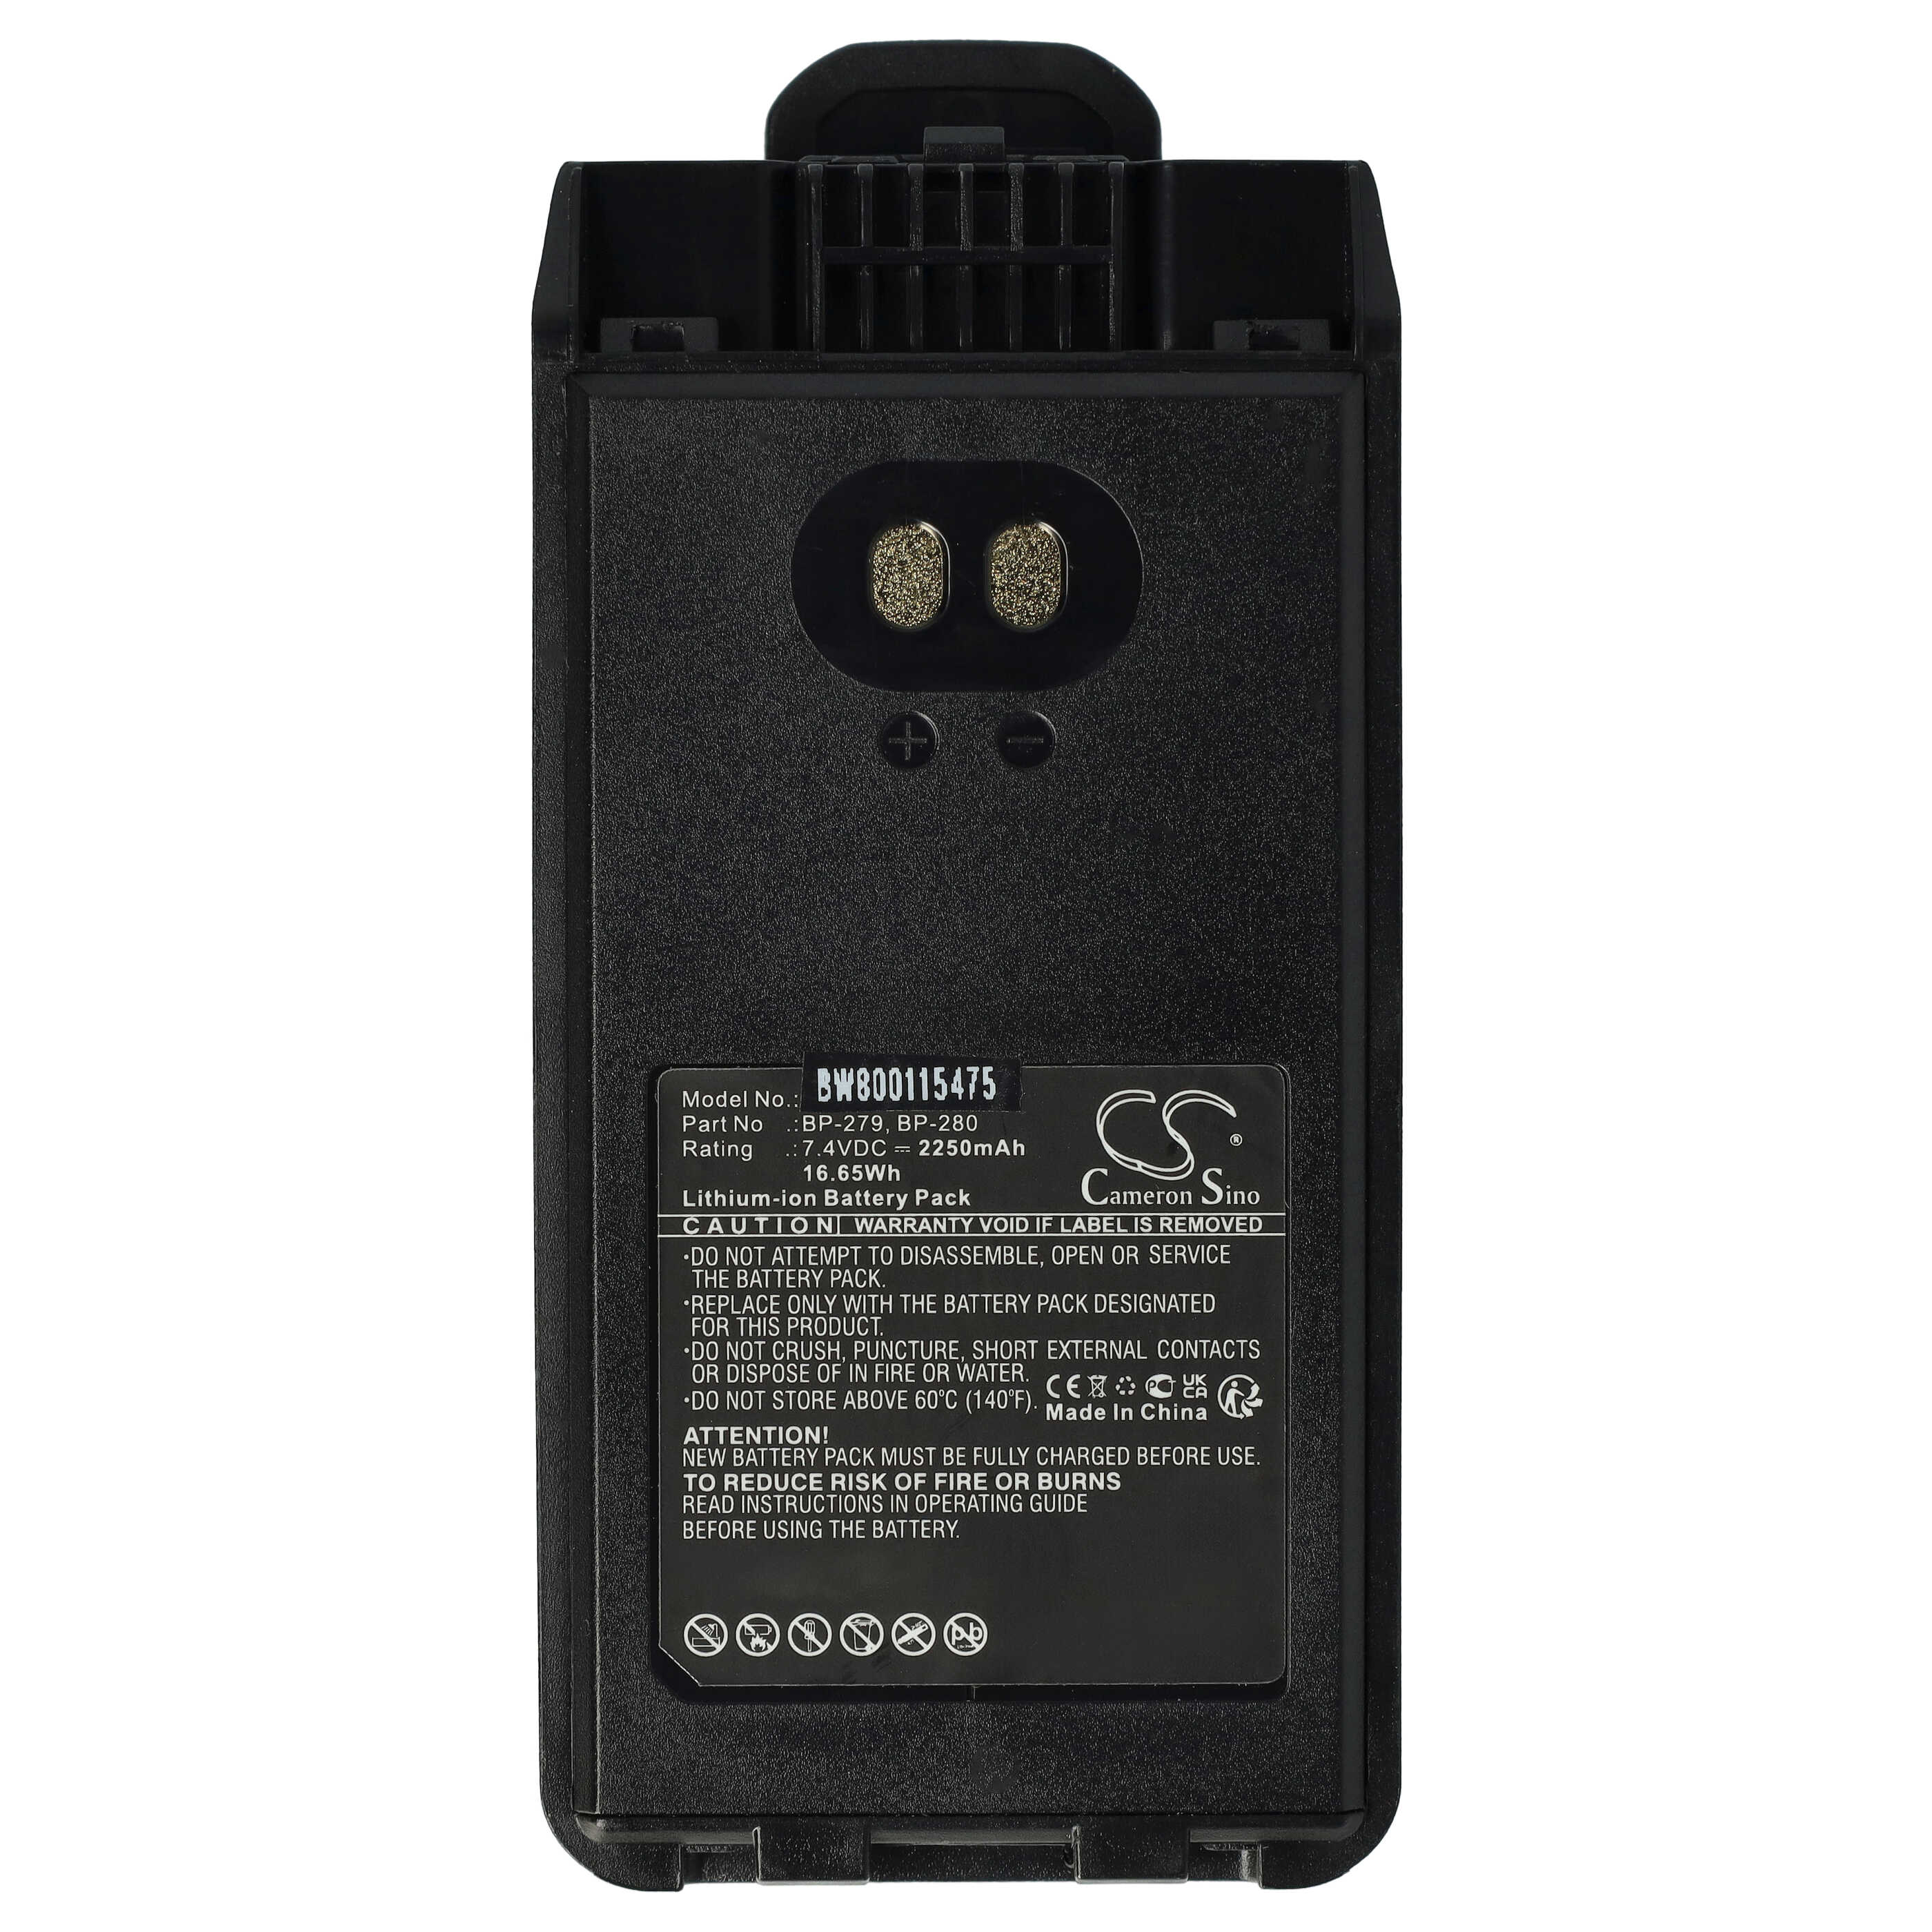 Akumulator do radiotelefonu zamiennik Icom BP-280LI - 2250 mAh 7,4 V Li-Ion + klips na pasek